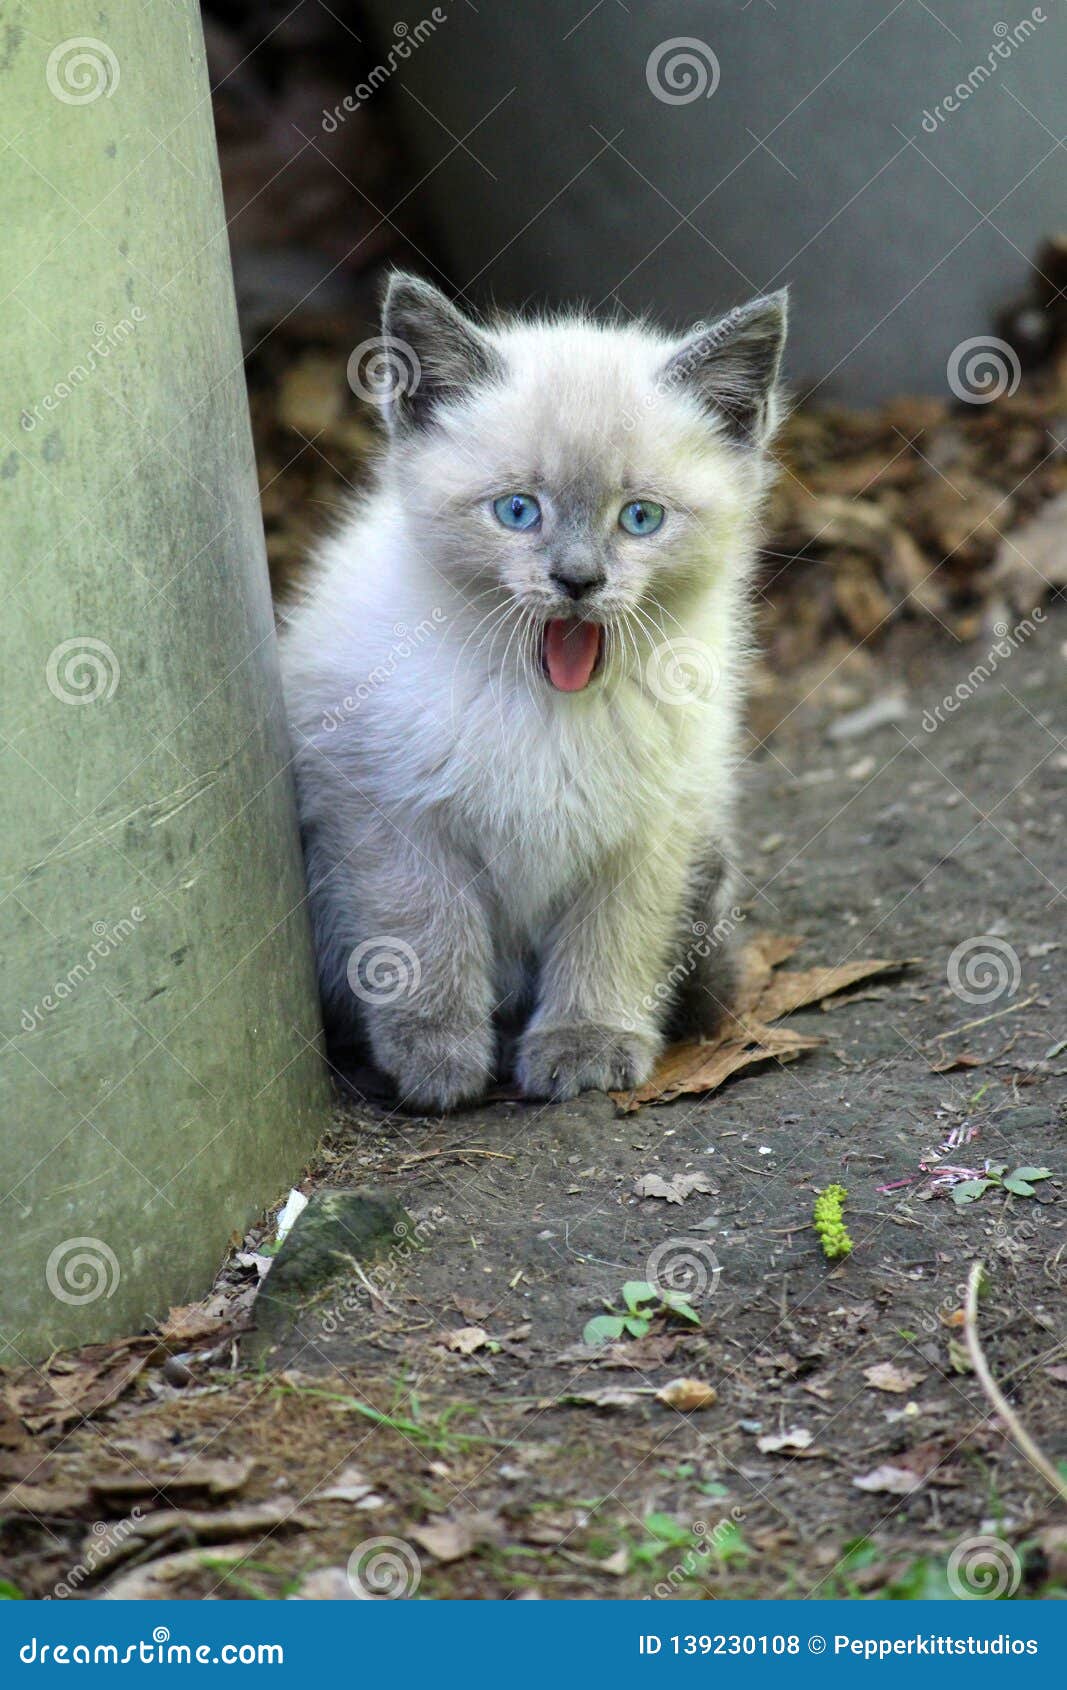 blue point kitten